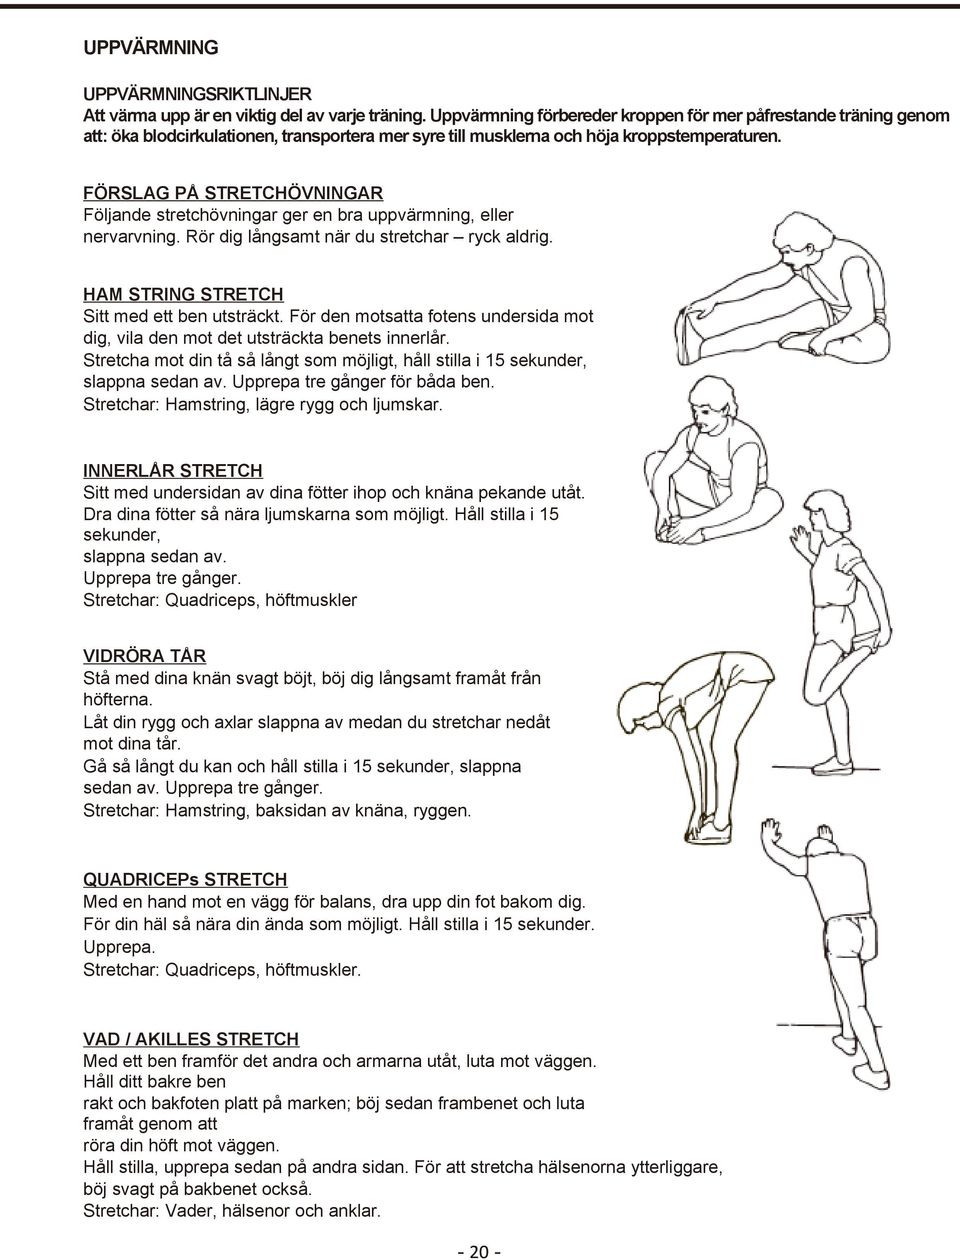 FÖRSLAG PÅ STRETCHÖVNINGAR Följande stretchövningar ger en bra uppvärmning, eller nervarvning. Rör dig långsamt när du stretchar ryck aldrig. HAM STRING STRETCH Sitt med ett ben utsträckt.